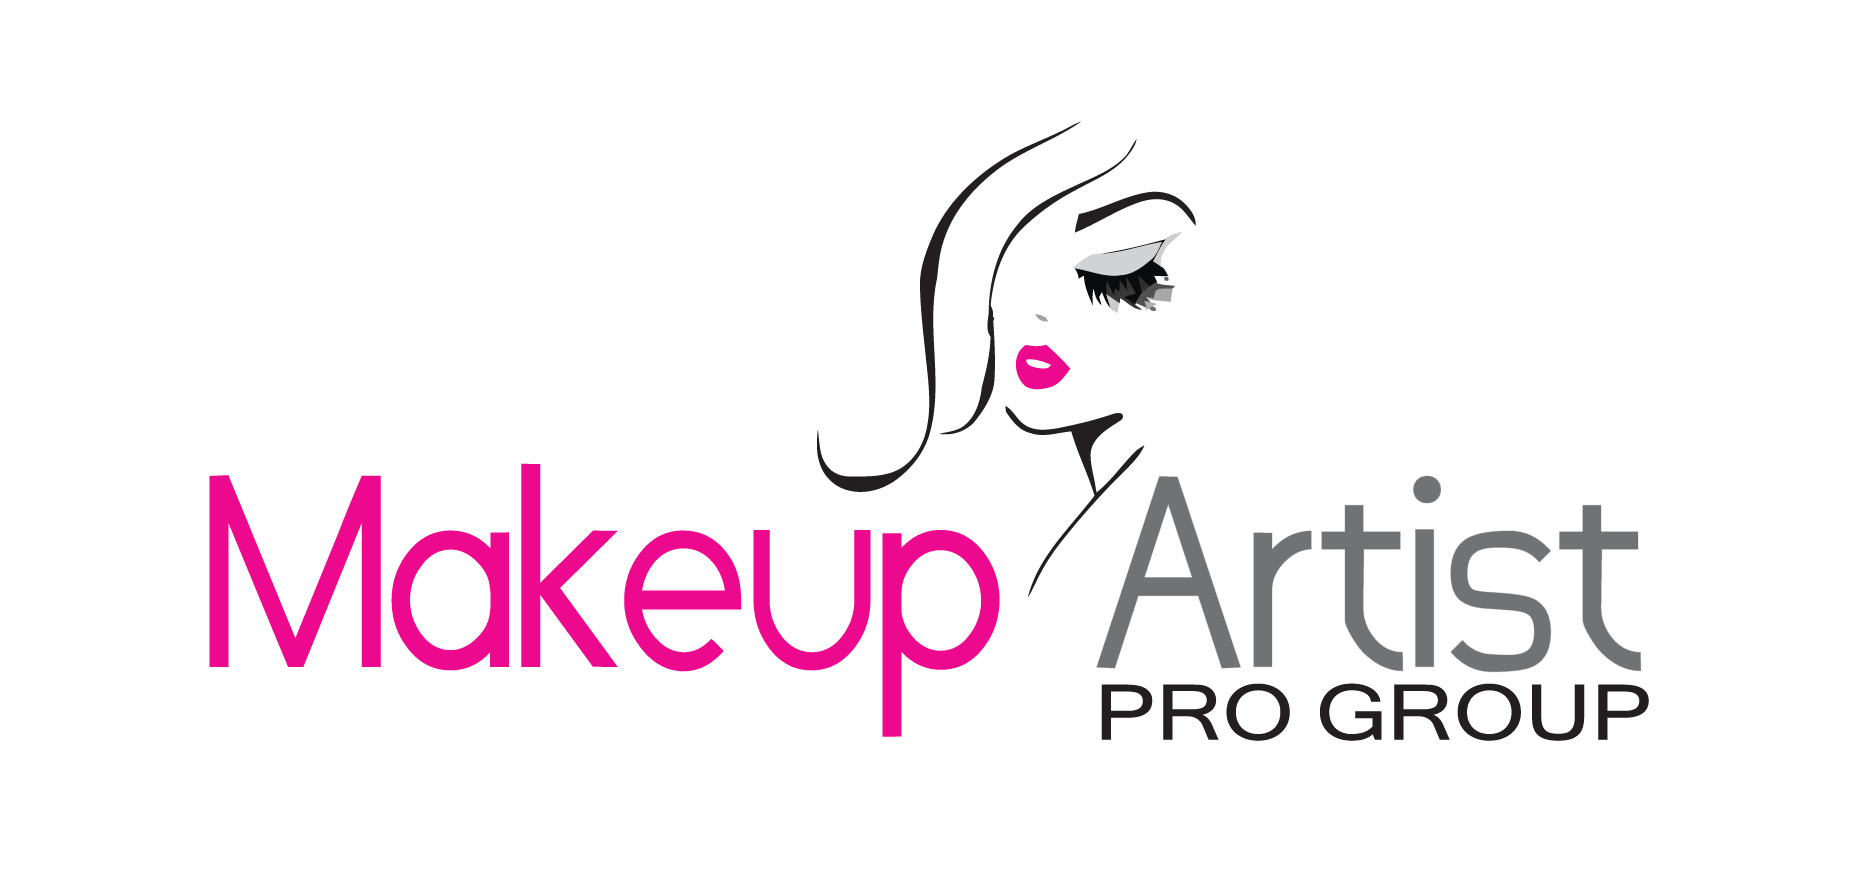 Makeup Artist Logo Png - logo design ideas